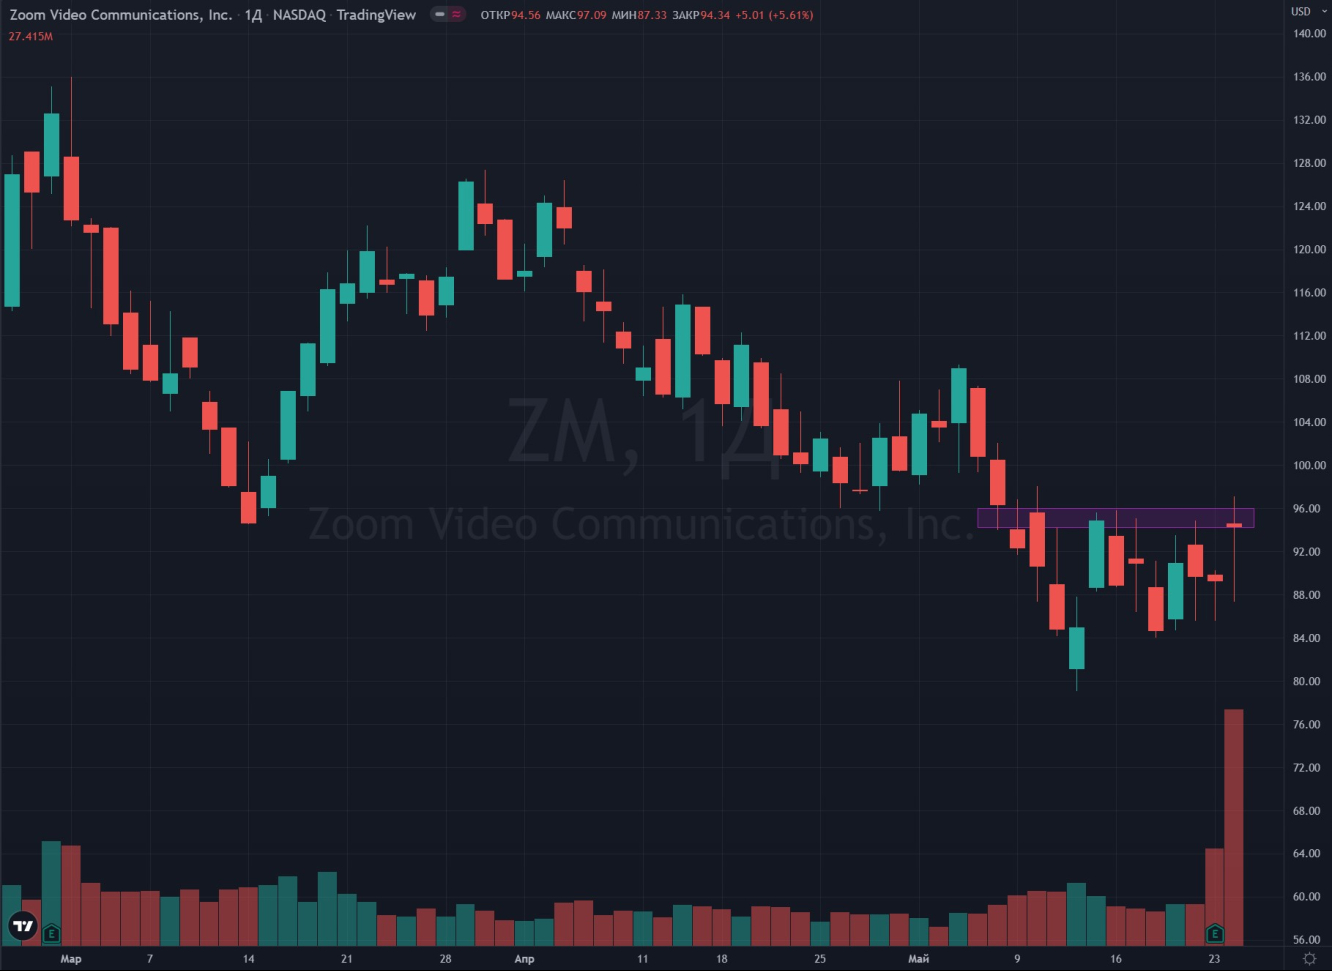 Zoom (ZM)